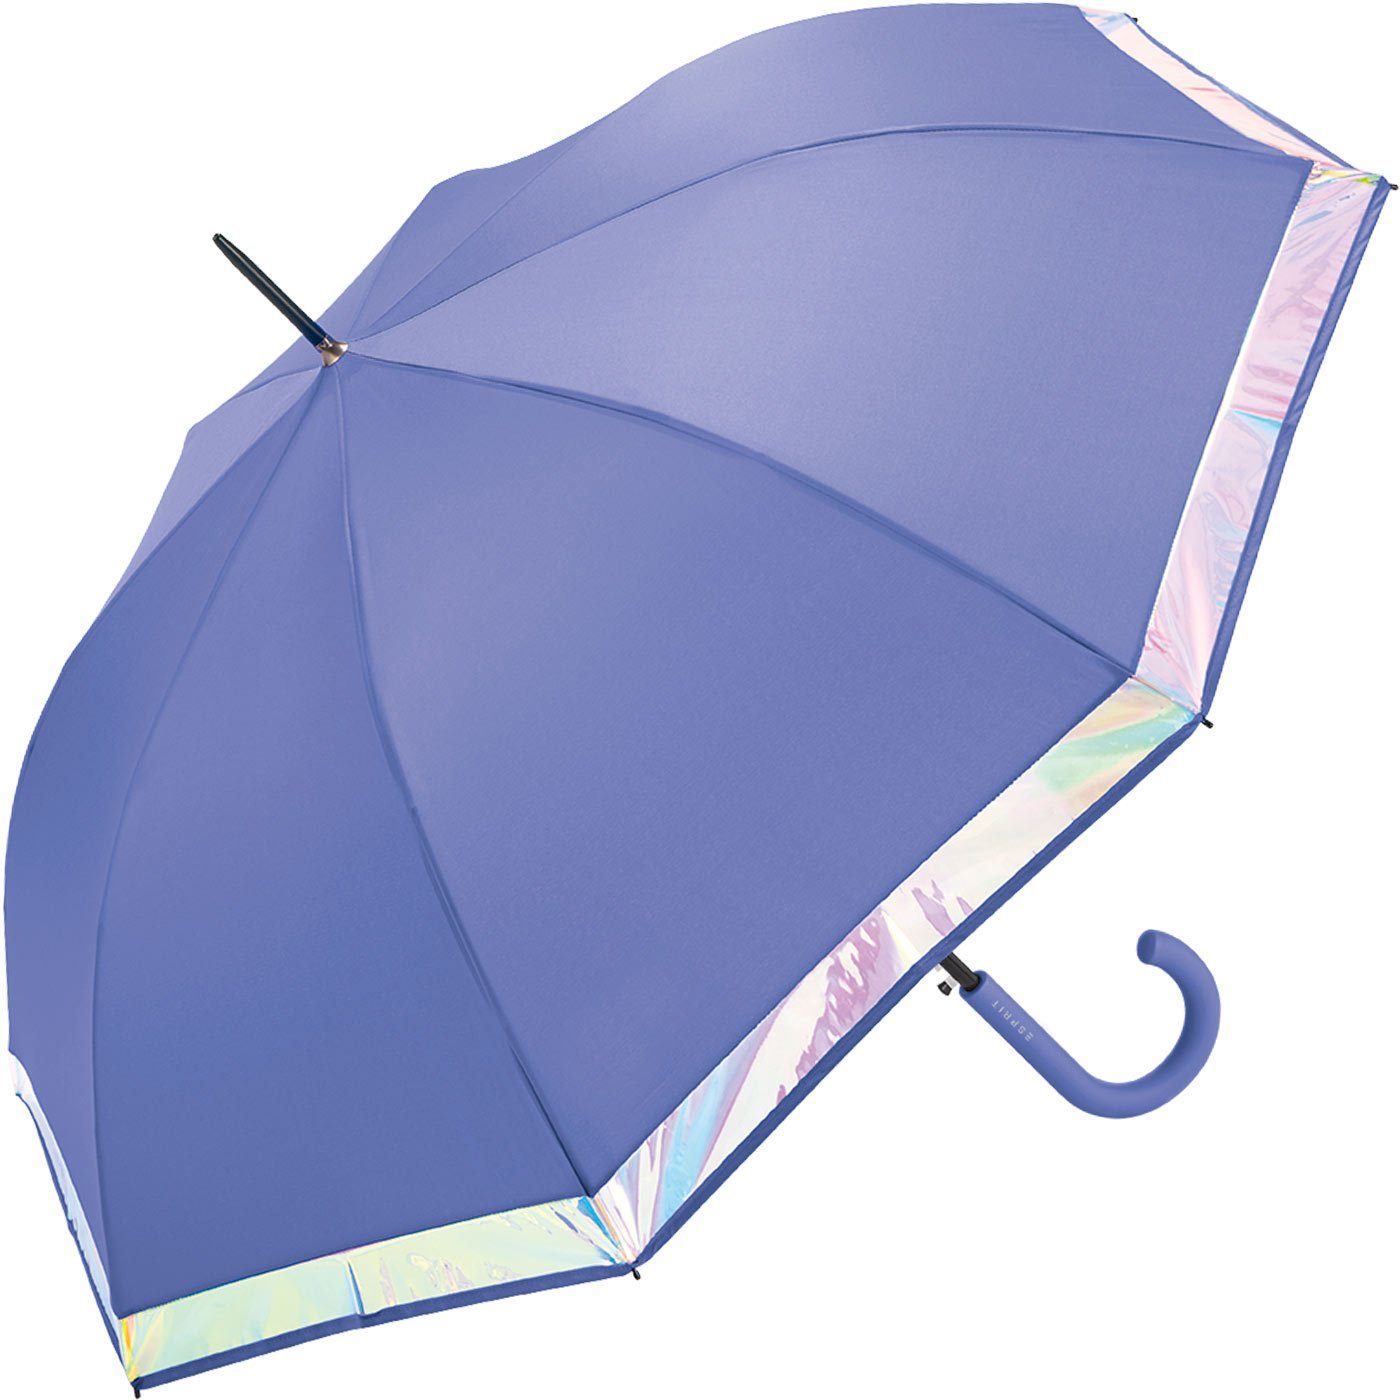 mit Damen Borte violett groß schimmernder Regenschirm Border, Langregenschirm Esprit Automatik und stabil, mit Shiny